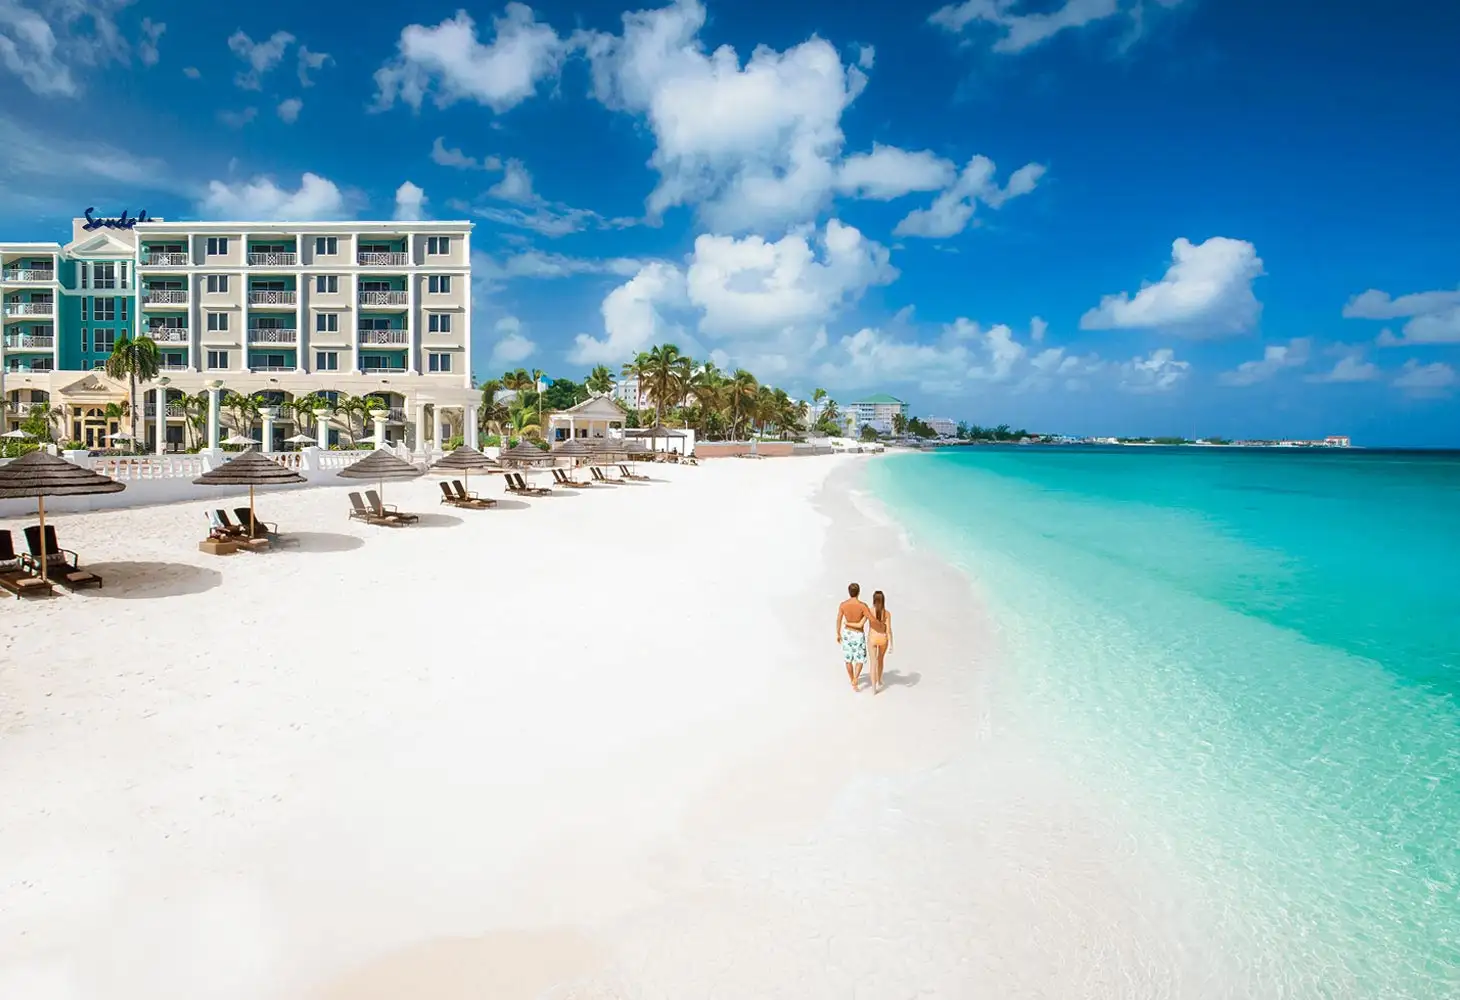 The Bahamas For Family Vacation